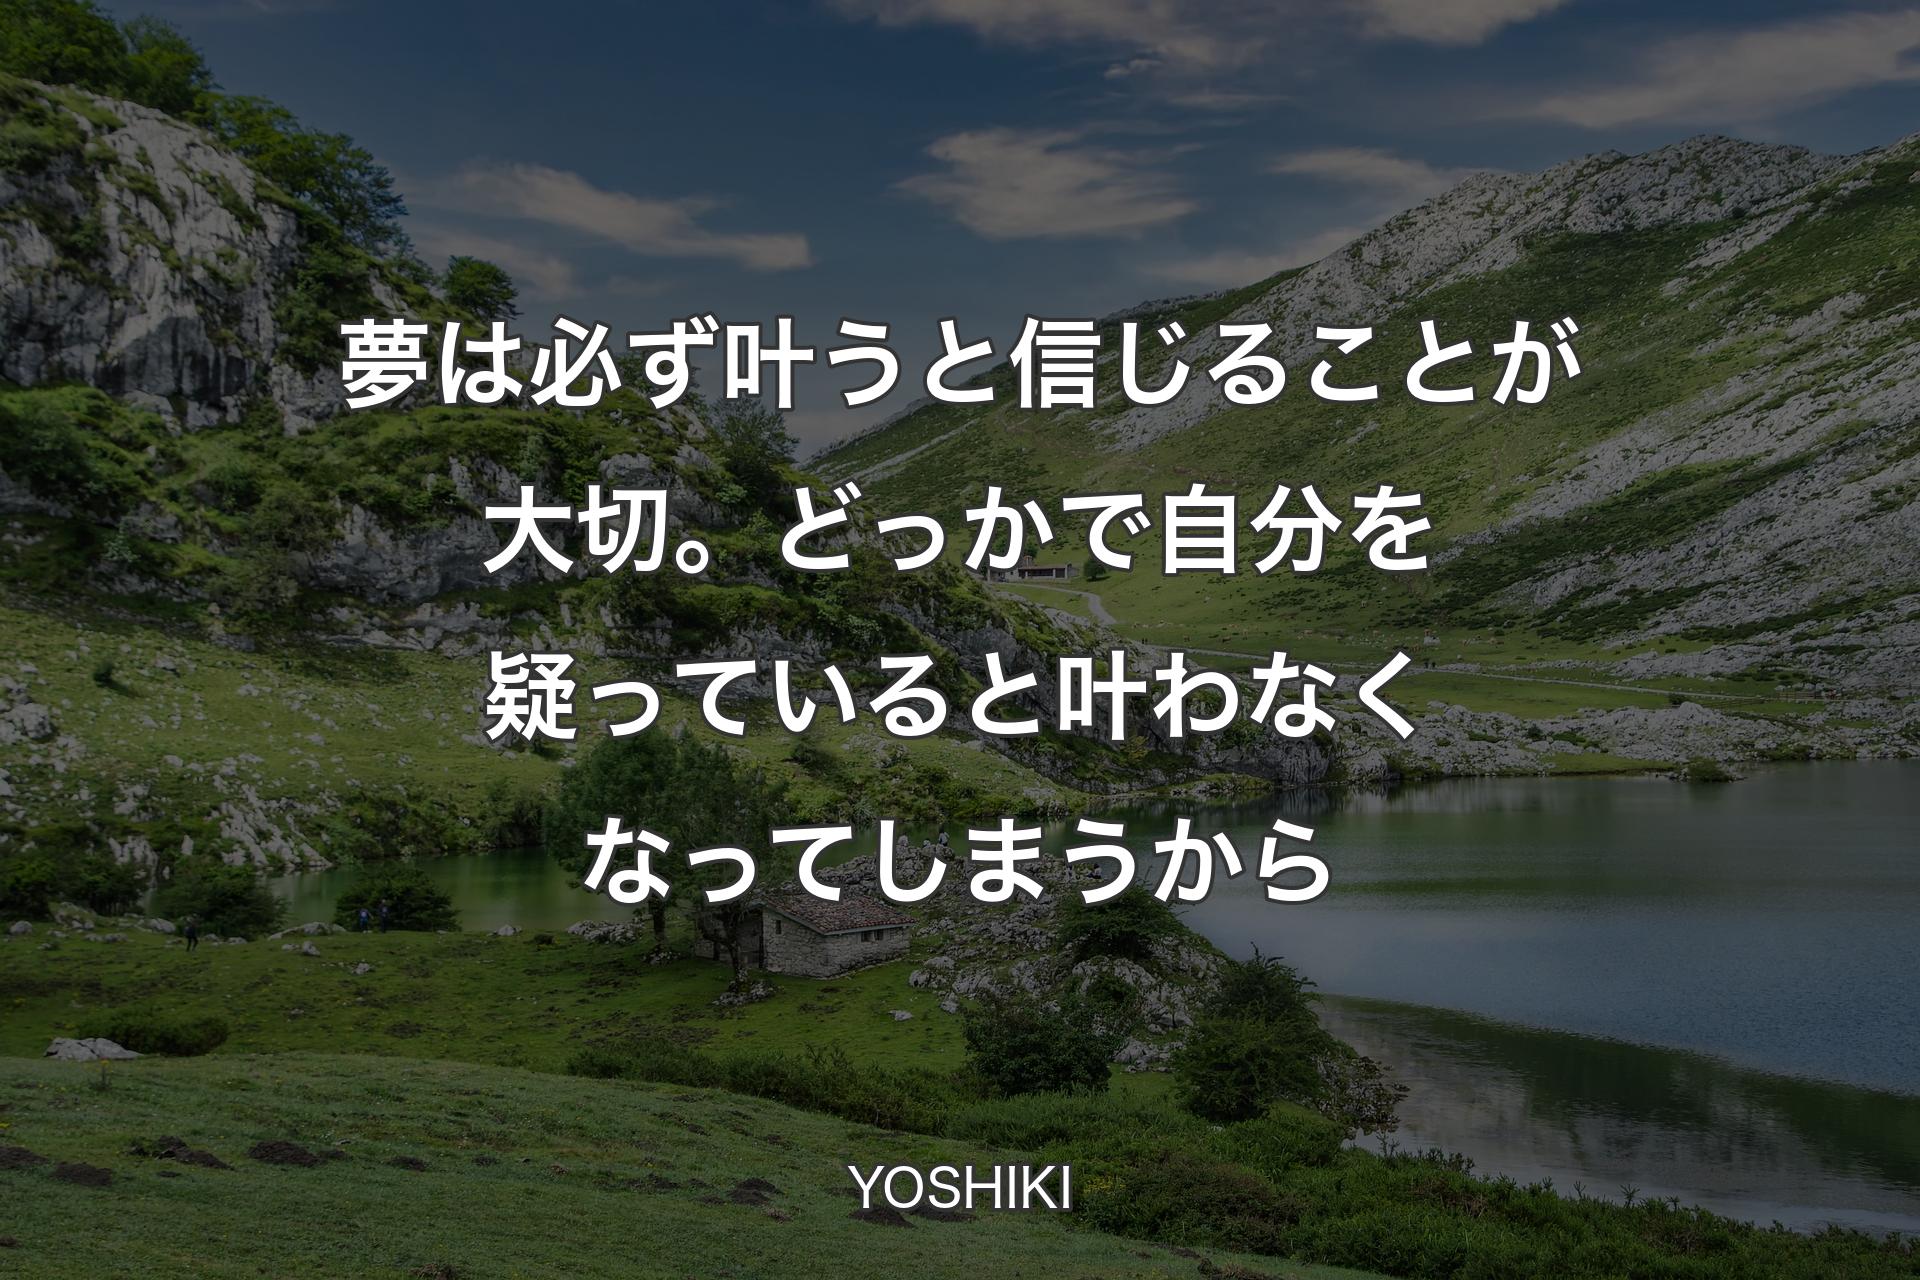 【背景1】夢は必ず叶うと信じることが大切。どっかで自分を疑っていると叶わなくなってしまうから - YOSHIKI